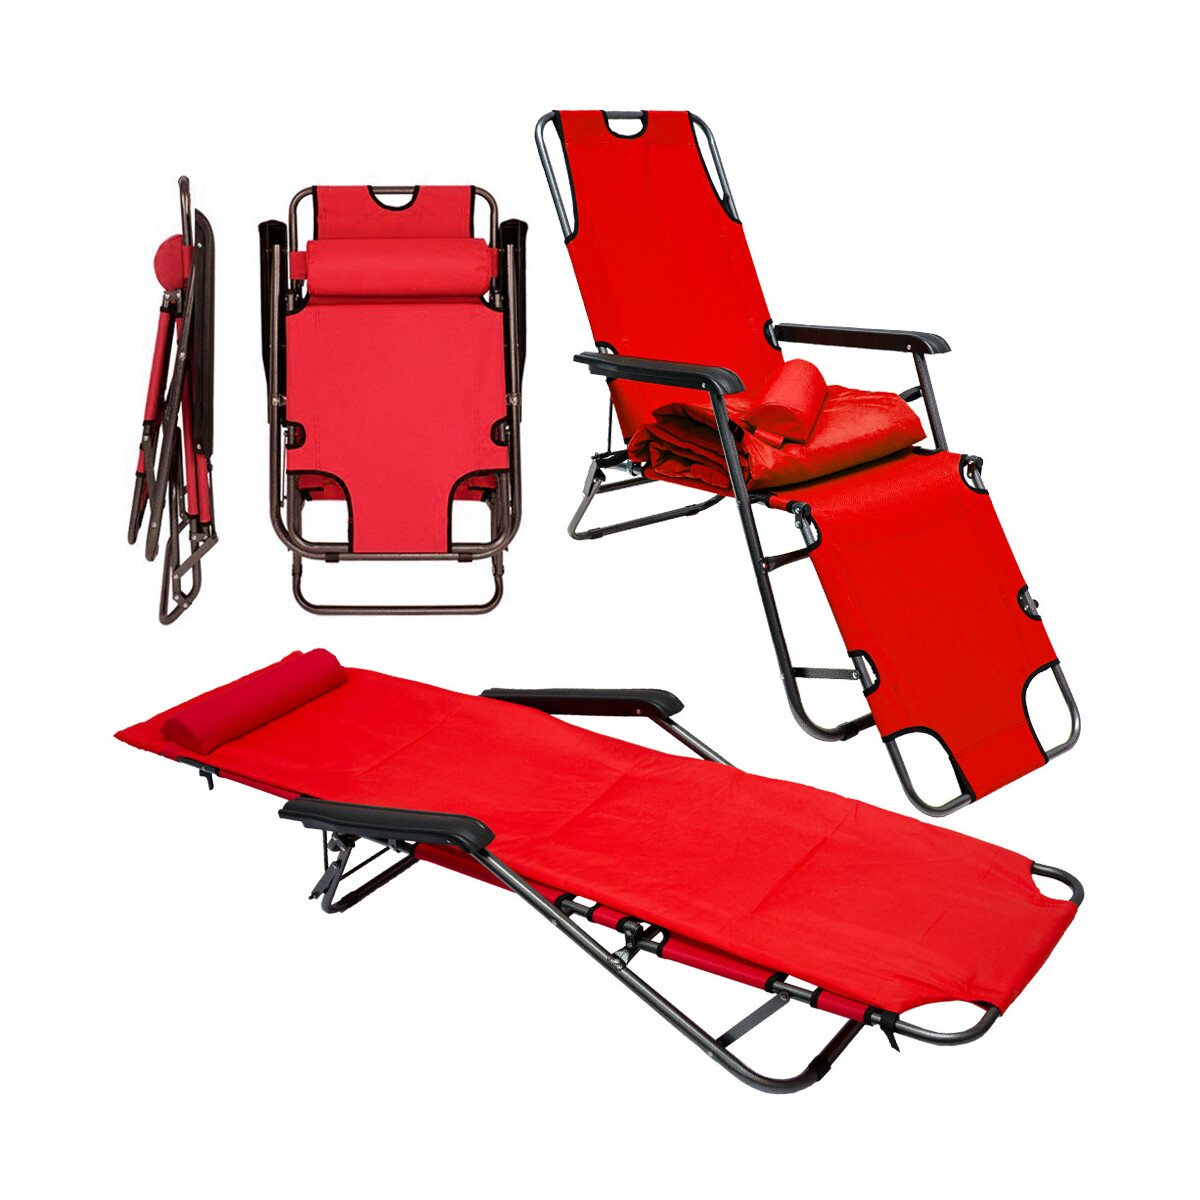 Campingstuhl Liegestuhl Rot mit Auflage 178x60 cm